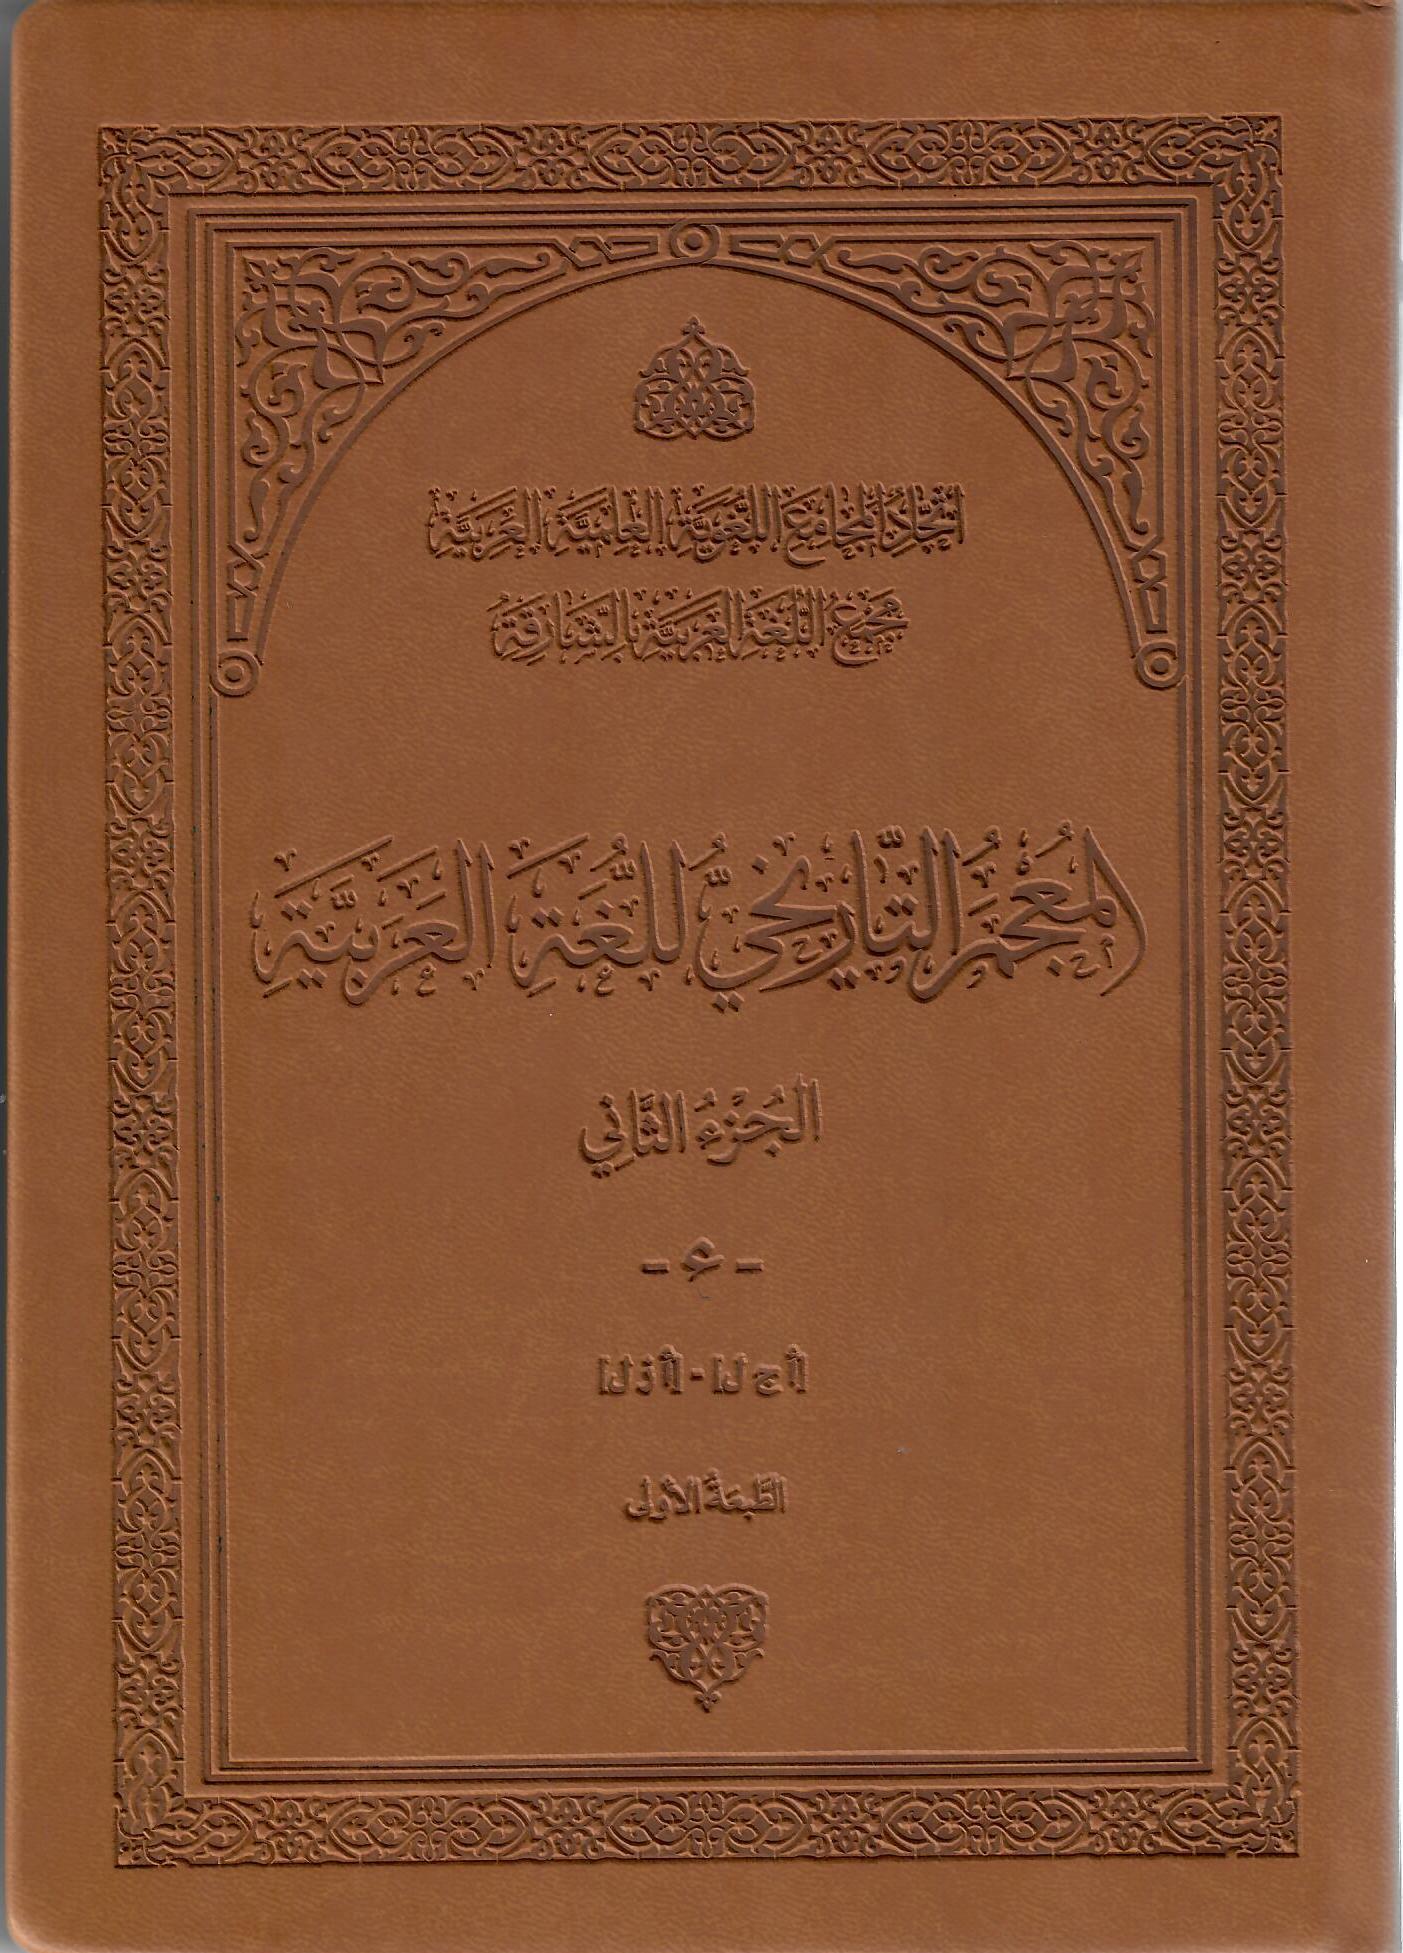 المعجم التاريخي للغة العربية الجزء الثاني